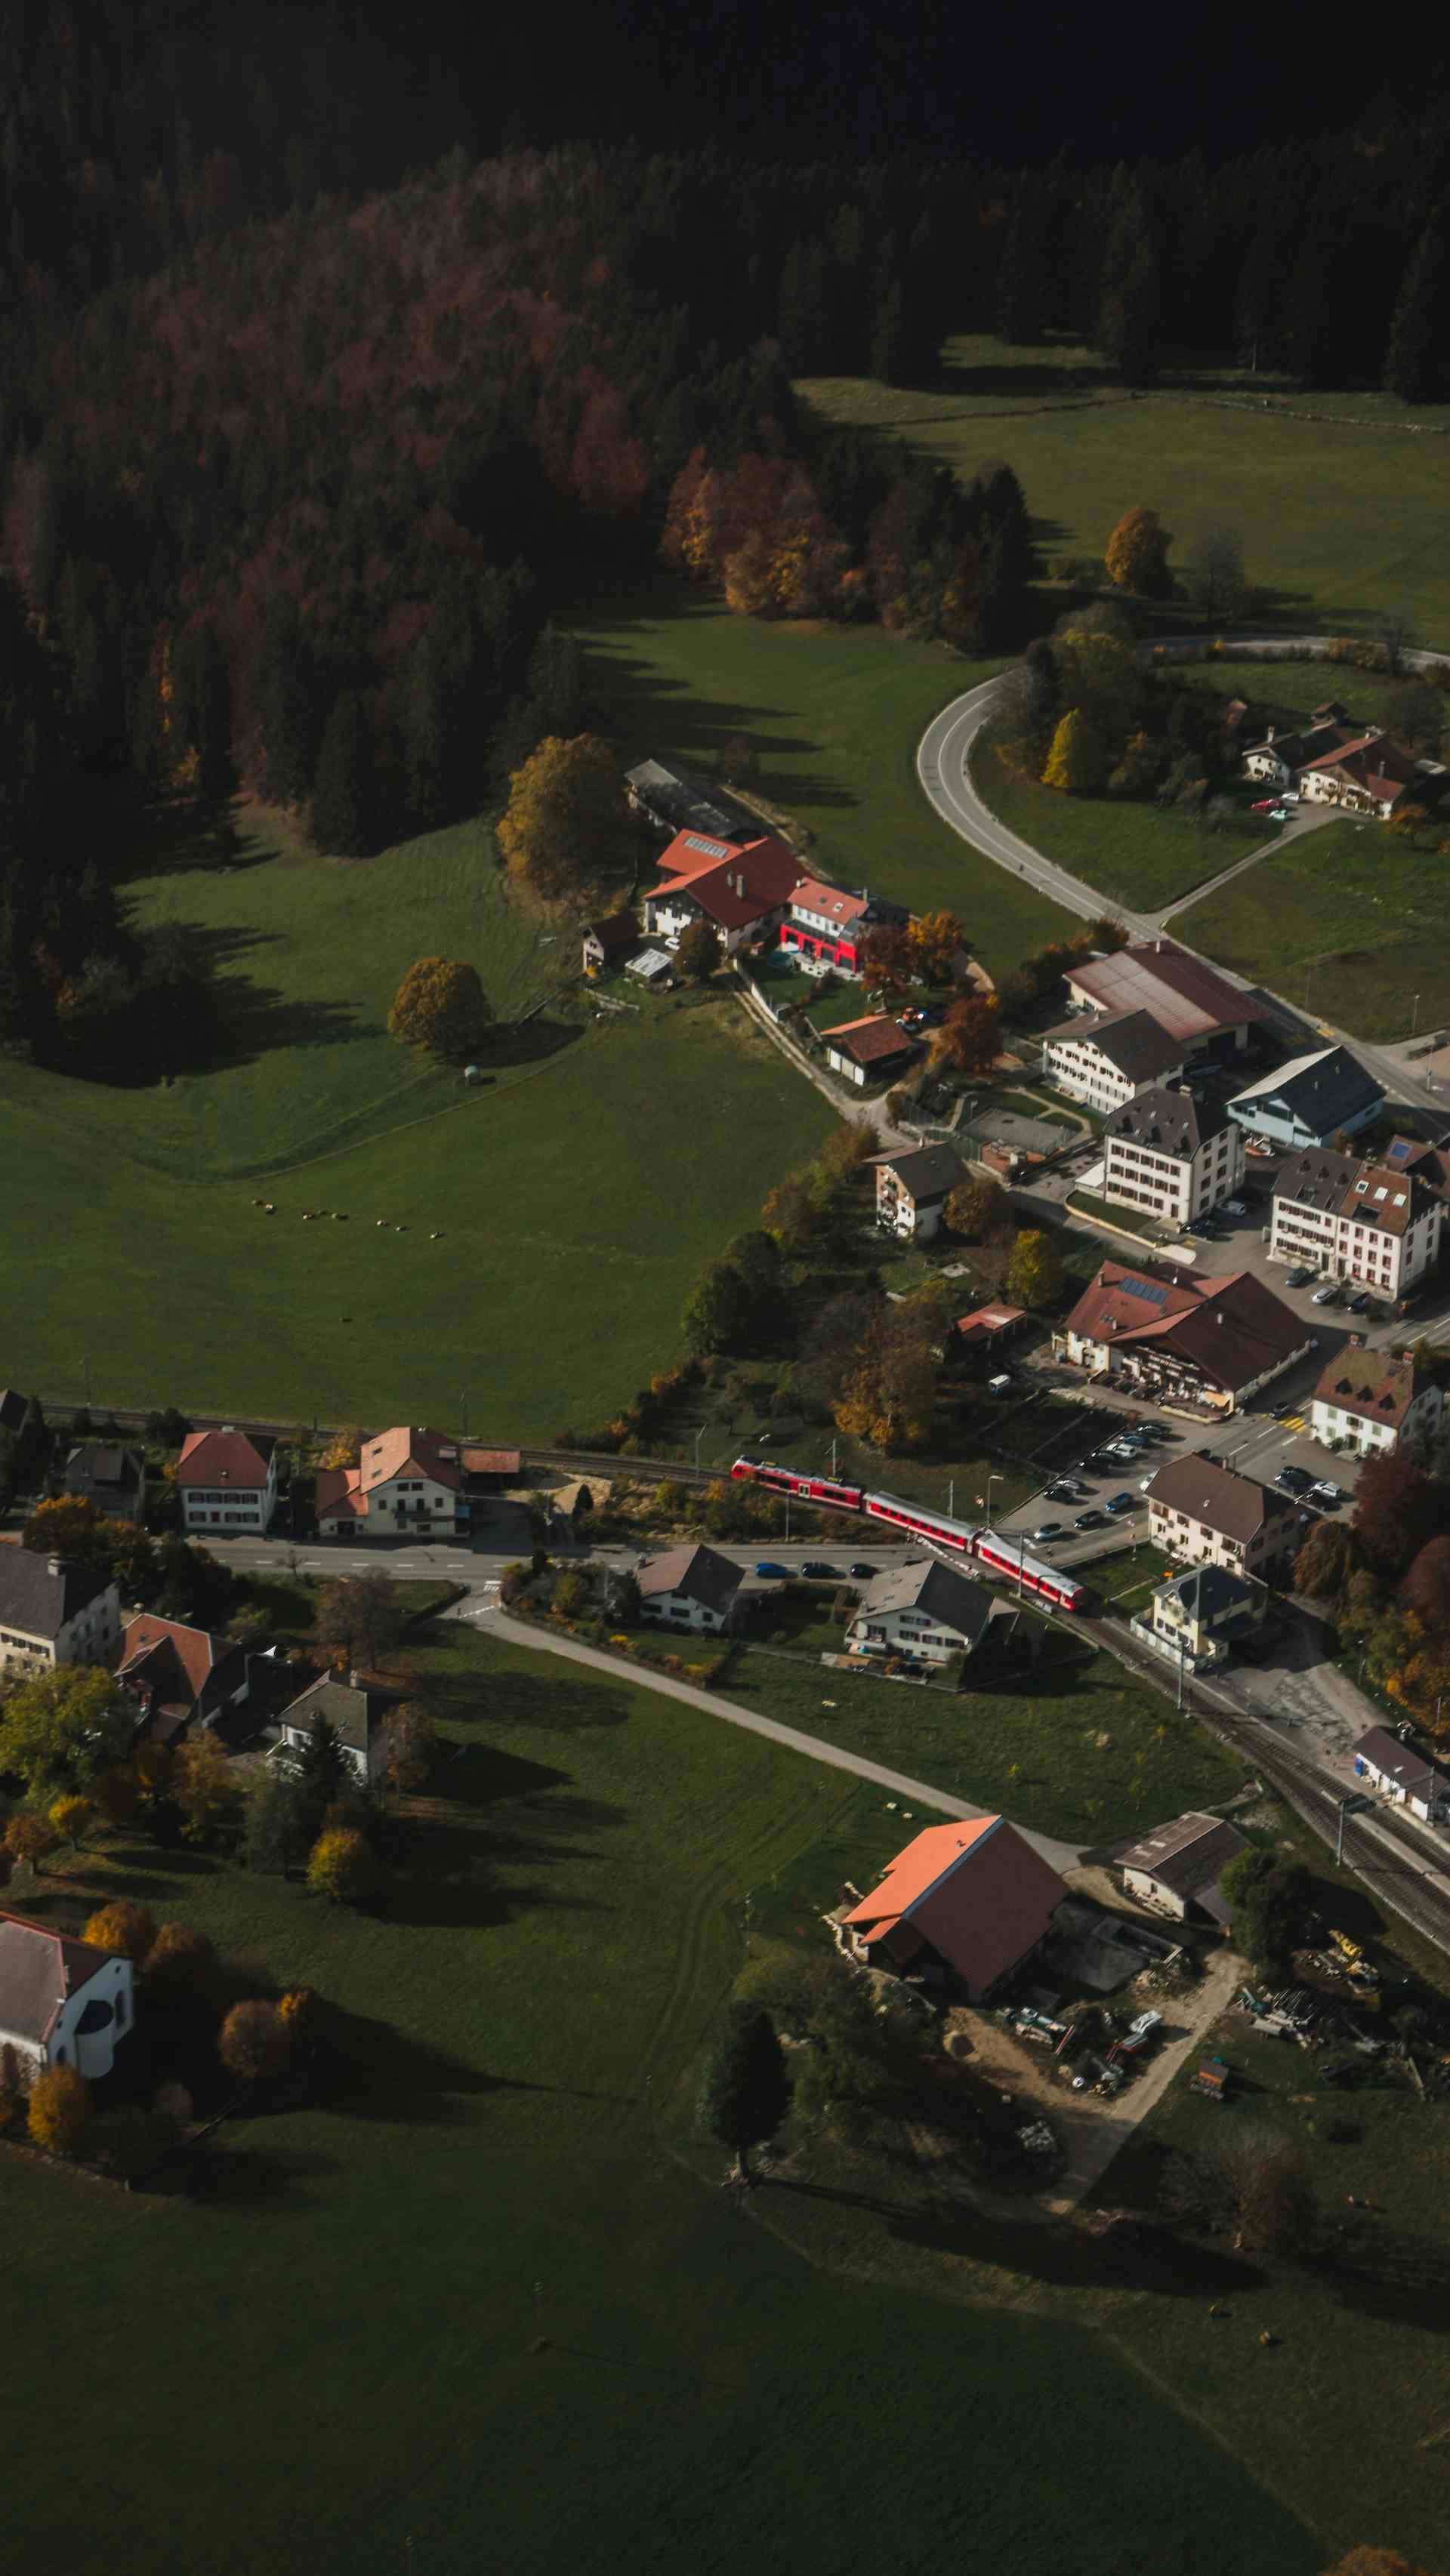 Les Saveurs de nos Pâturages, producteur à Pleigne canton de Jura en Suisse